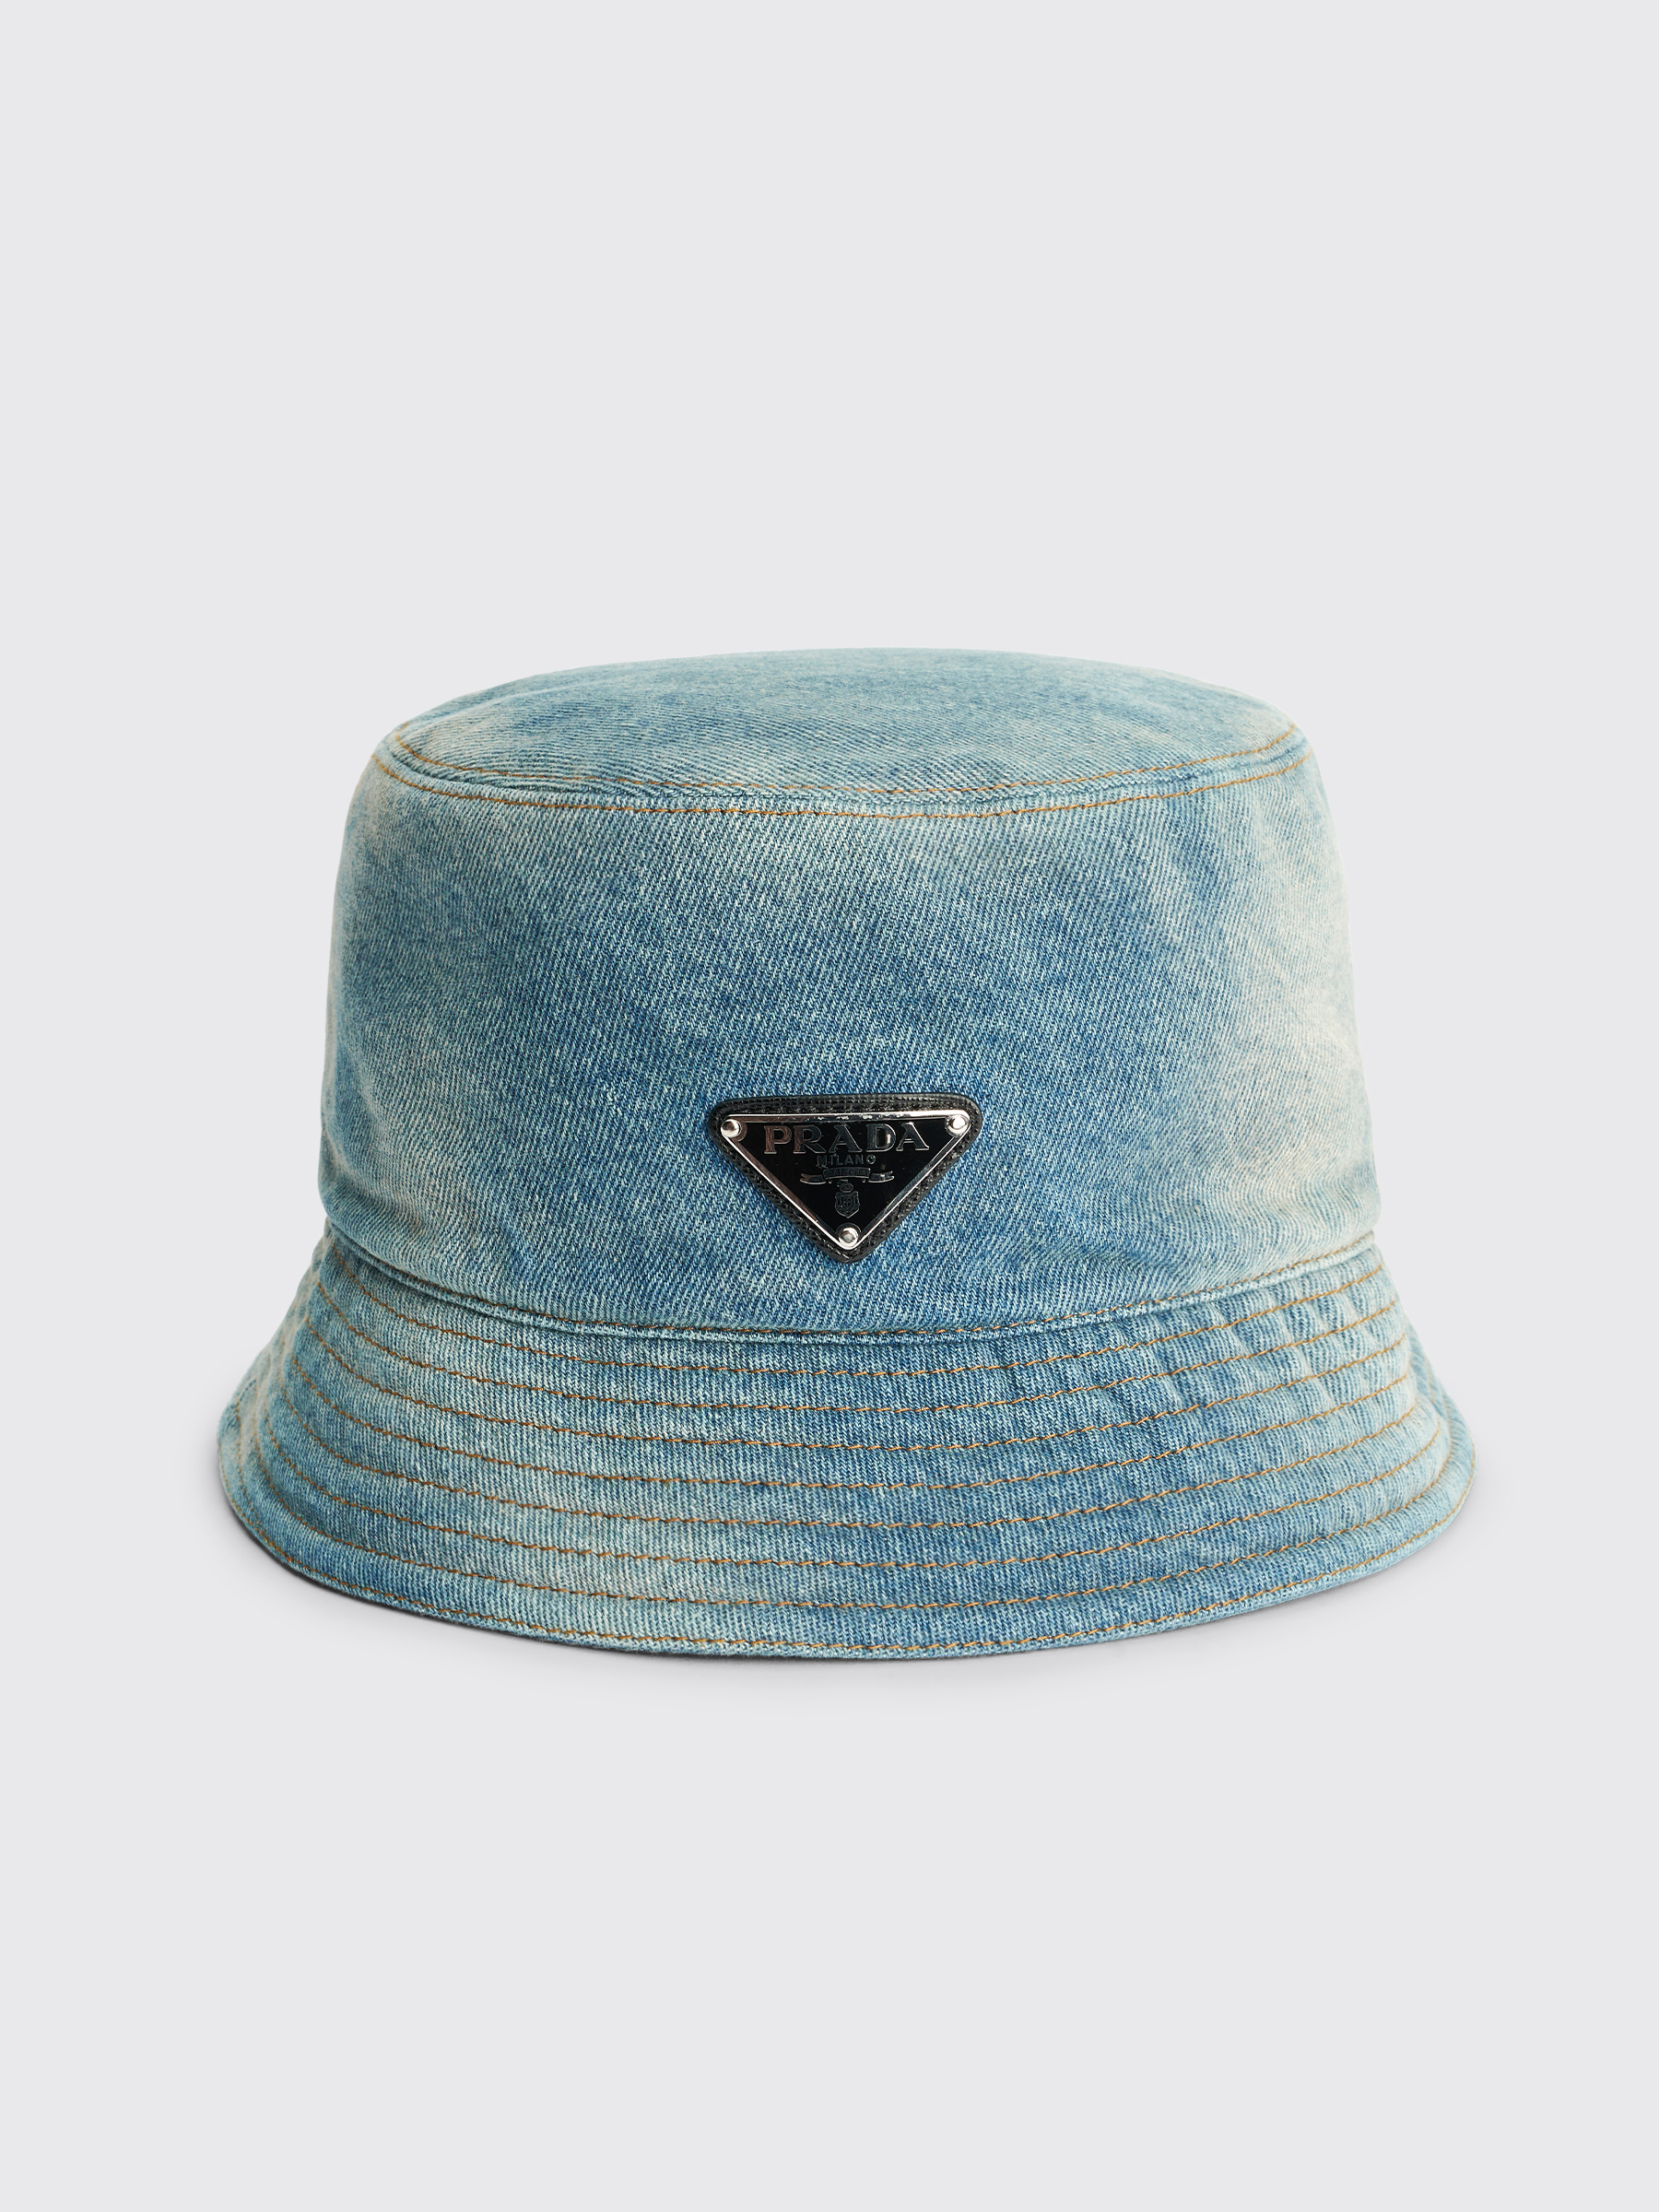 Très Bien - Bucket Blue Hat Prada Capelli Denim